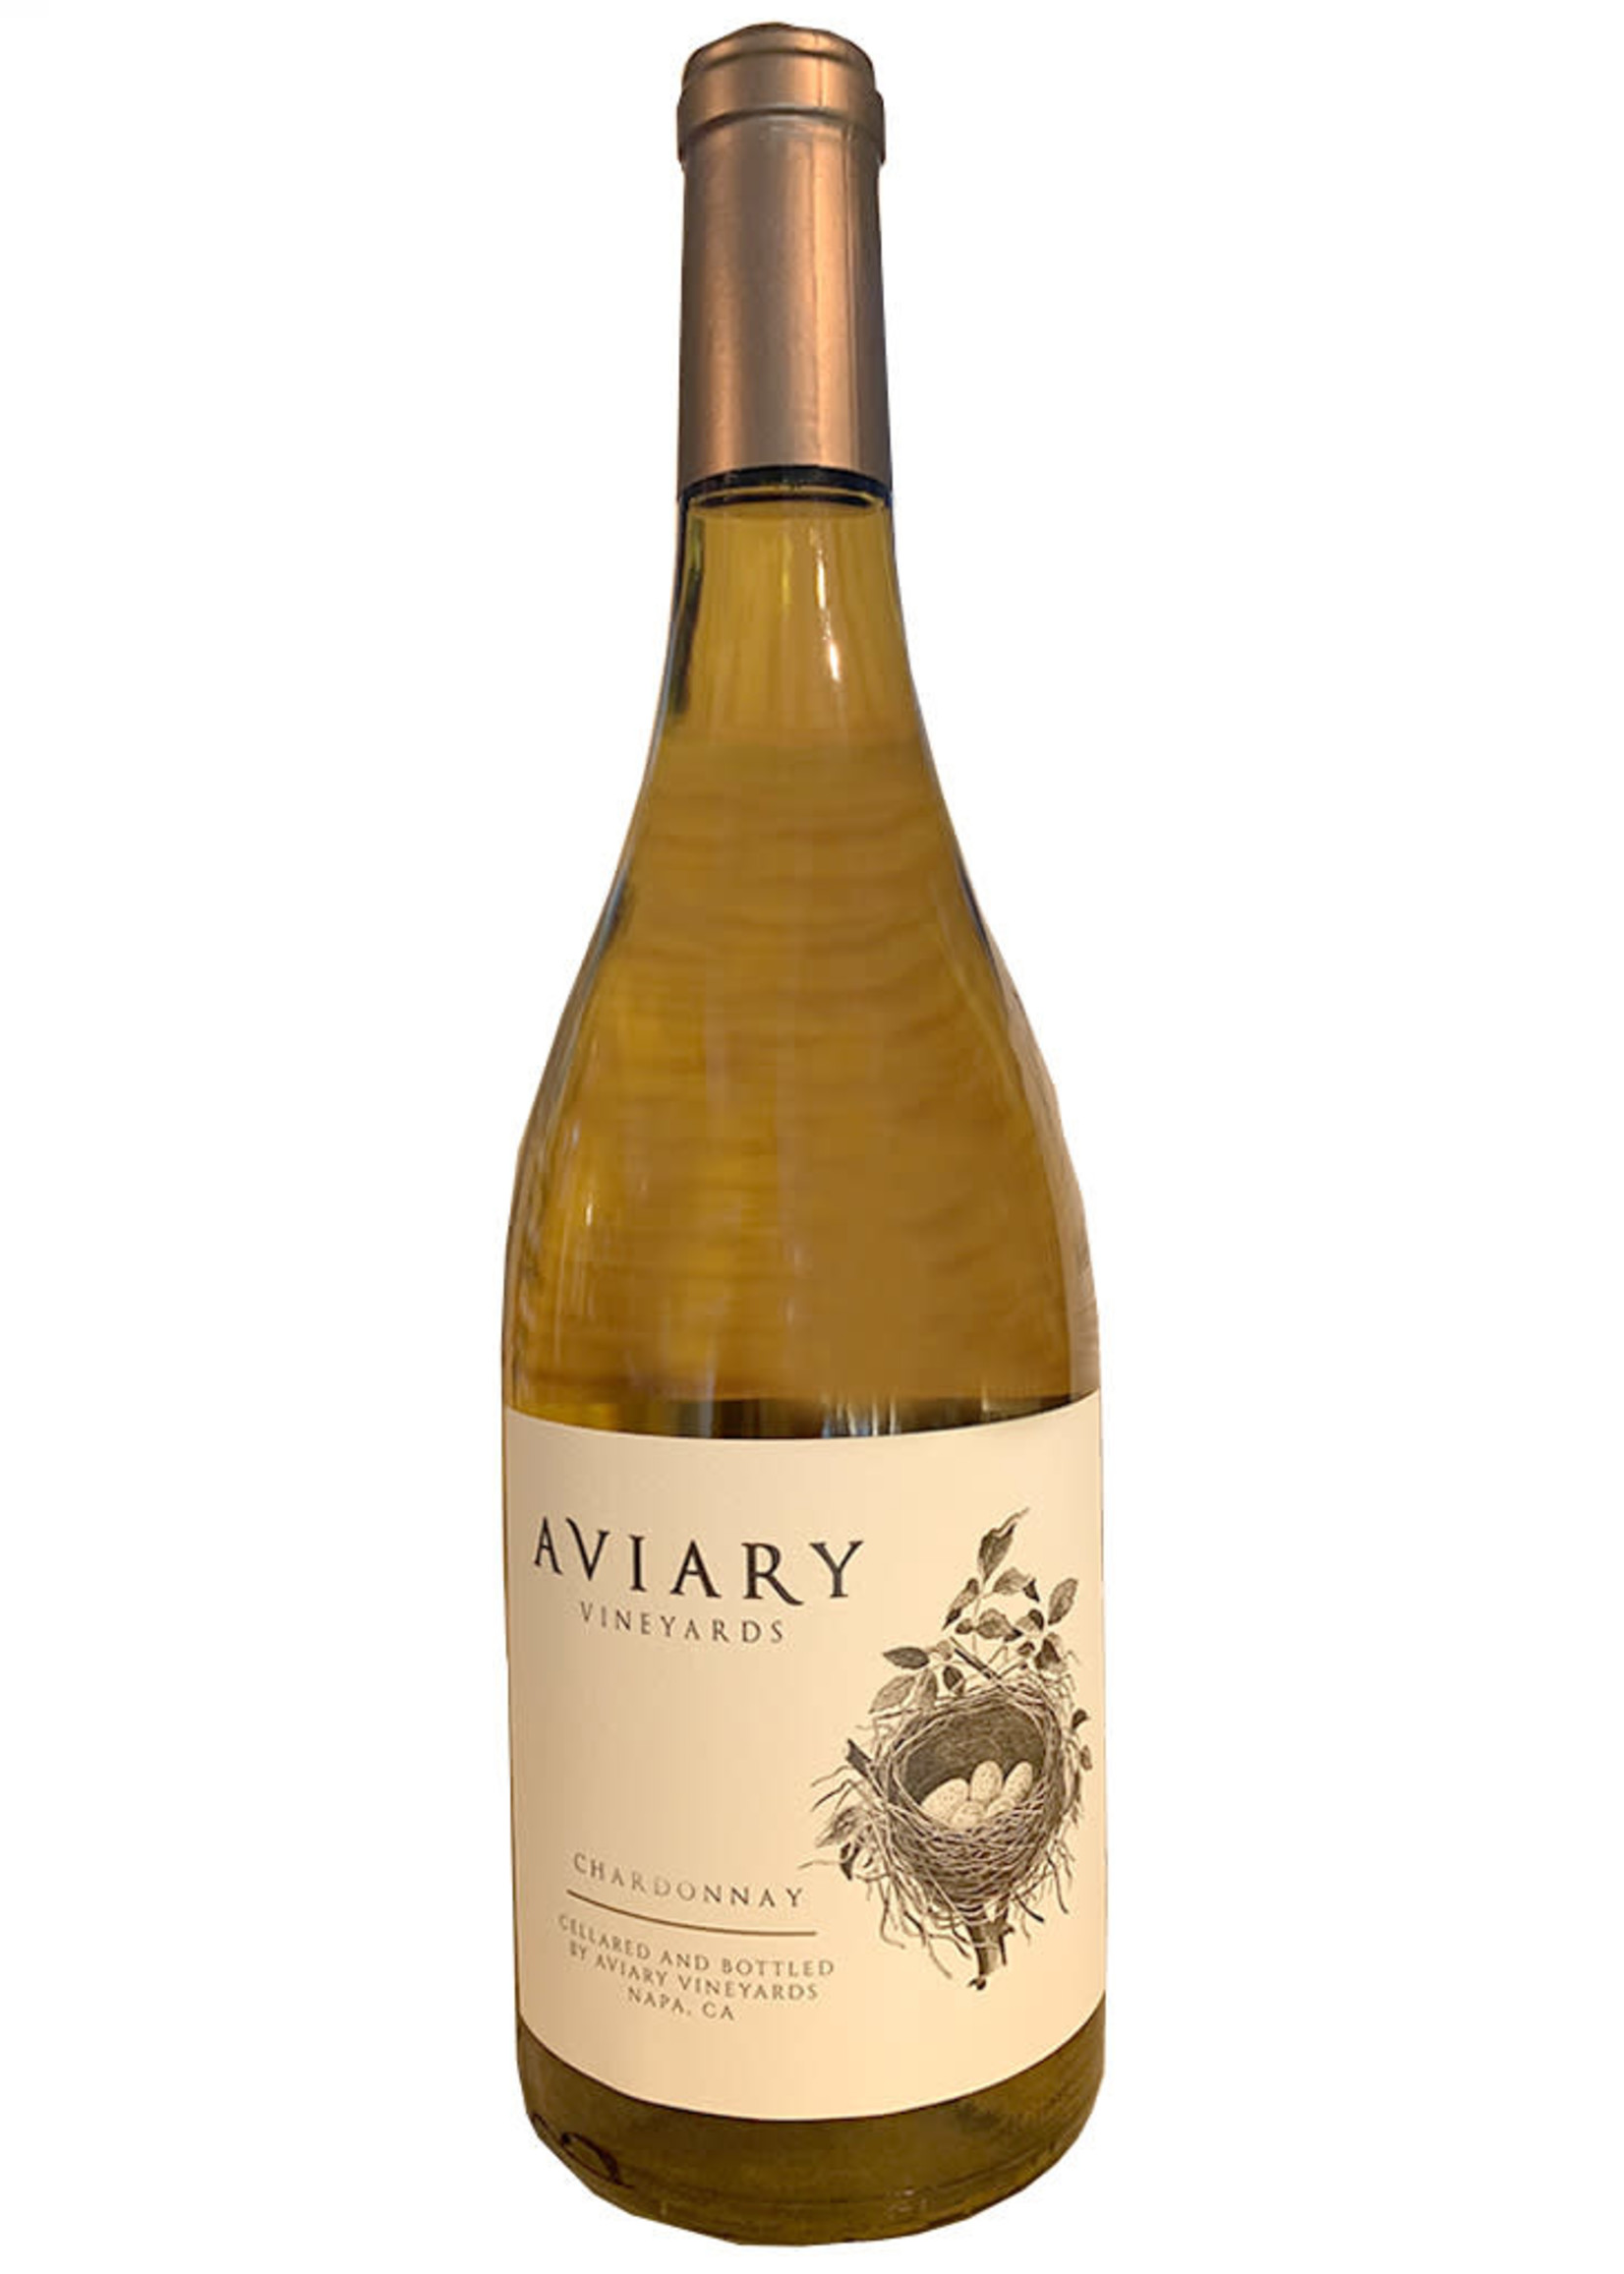 AVIARY Vineyards 2018 Chardonnay, Napa Valley, California